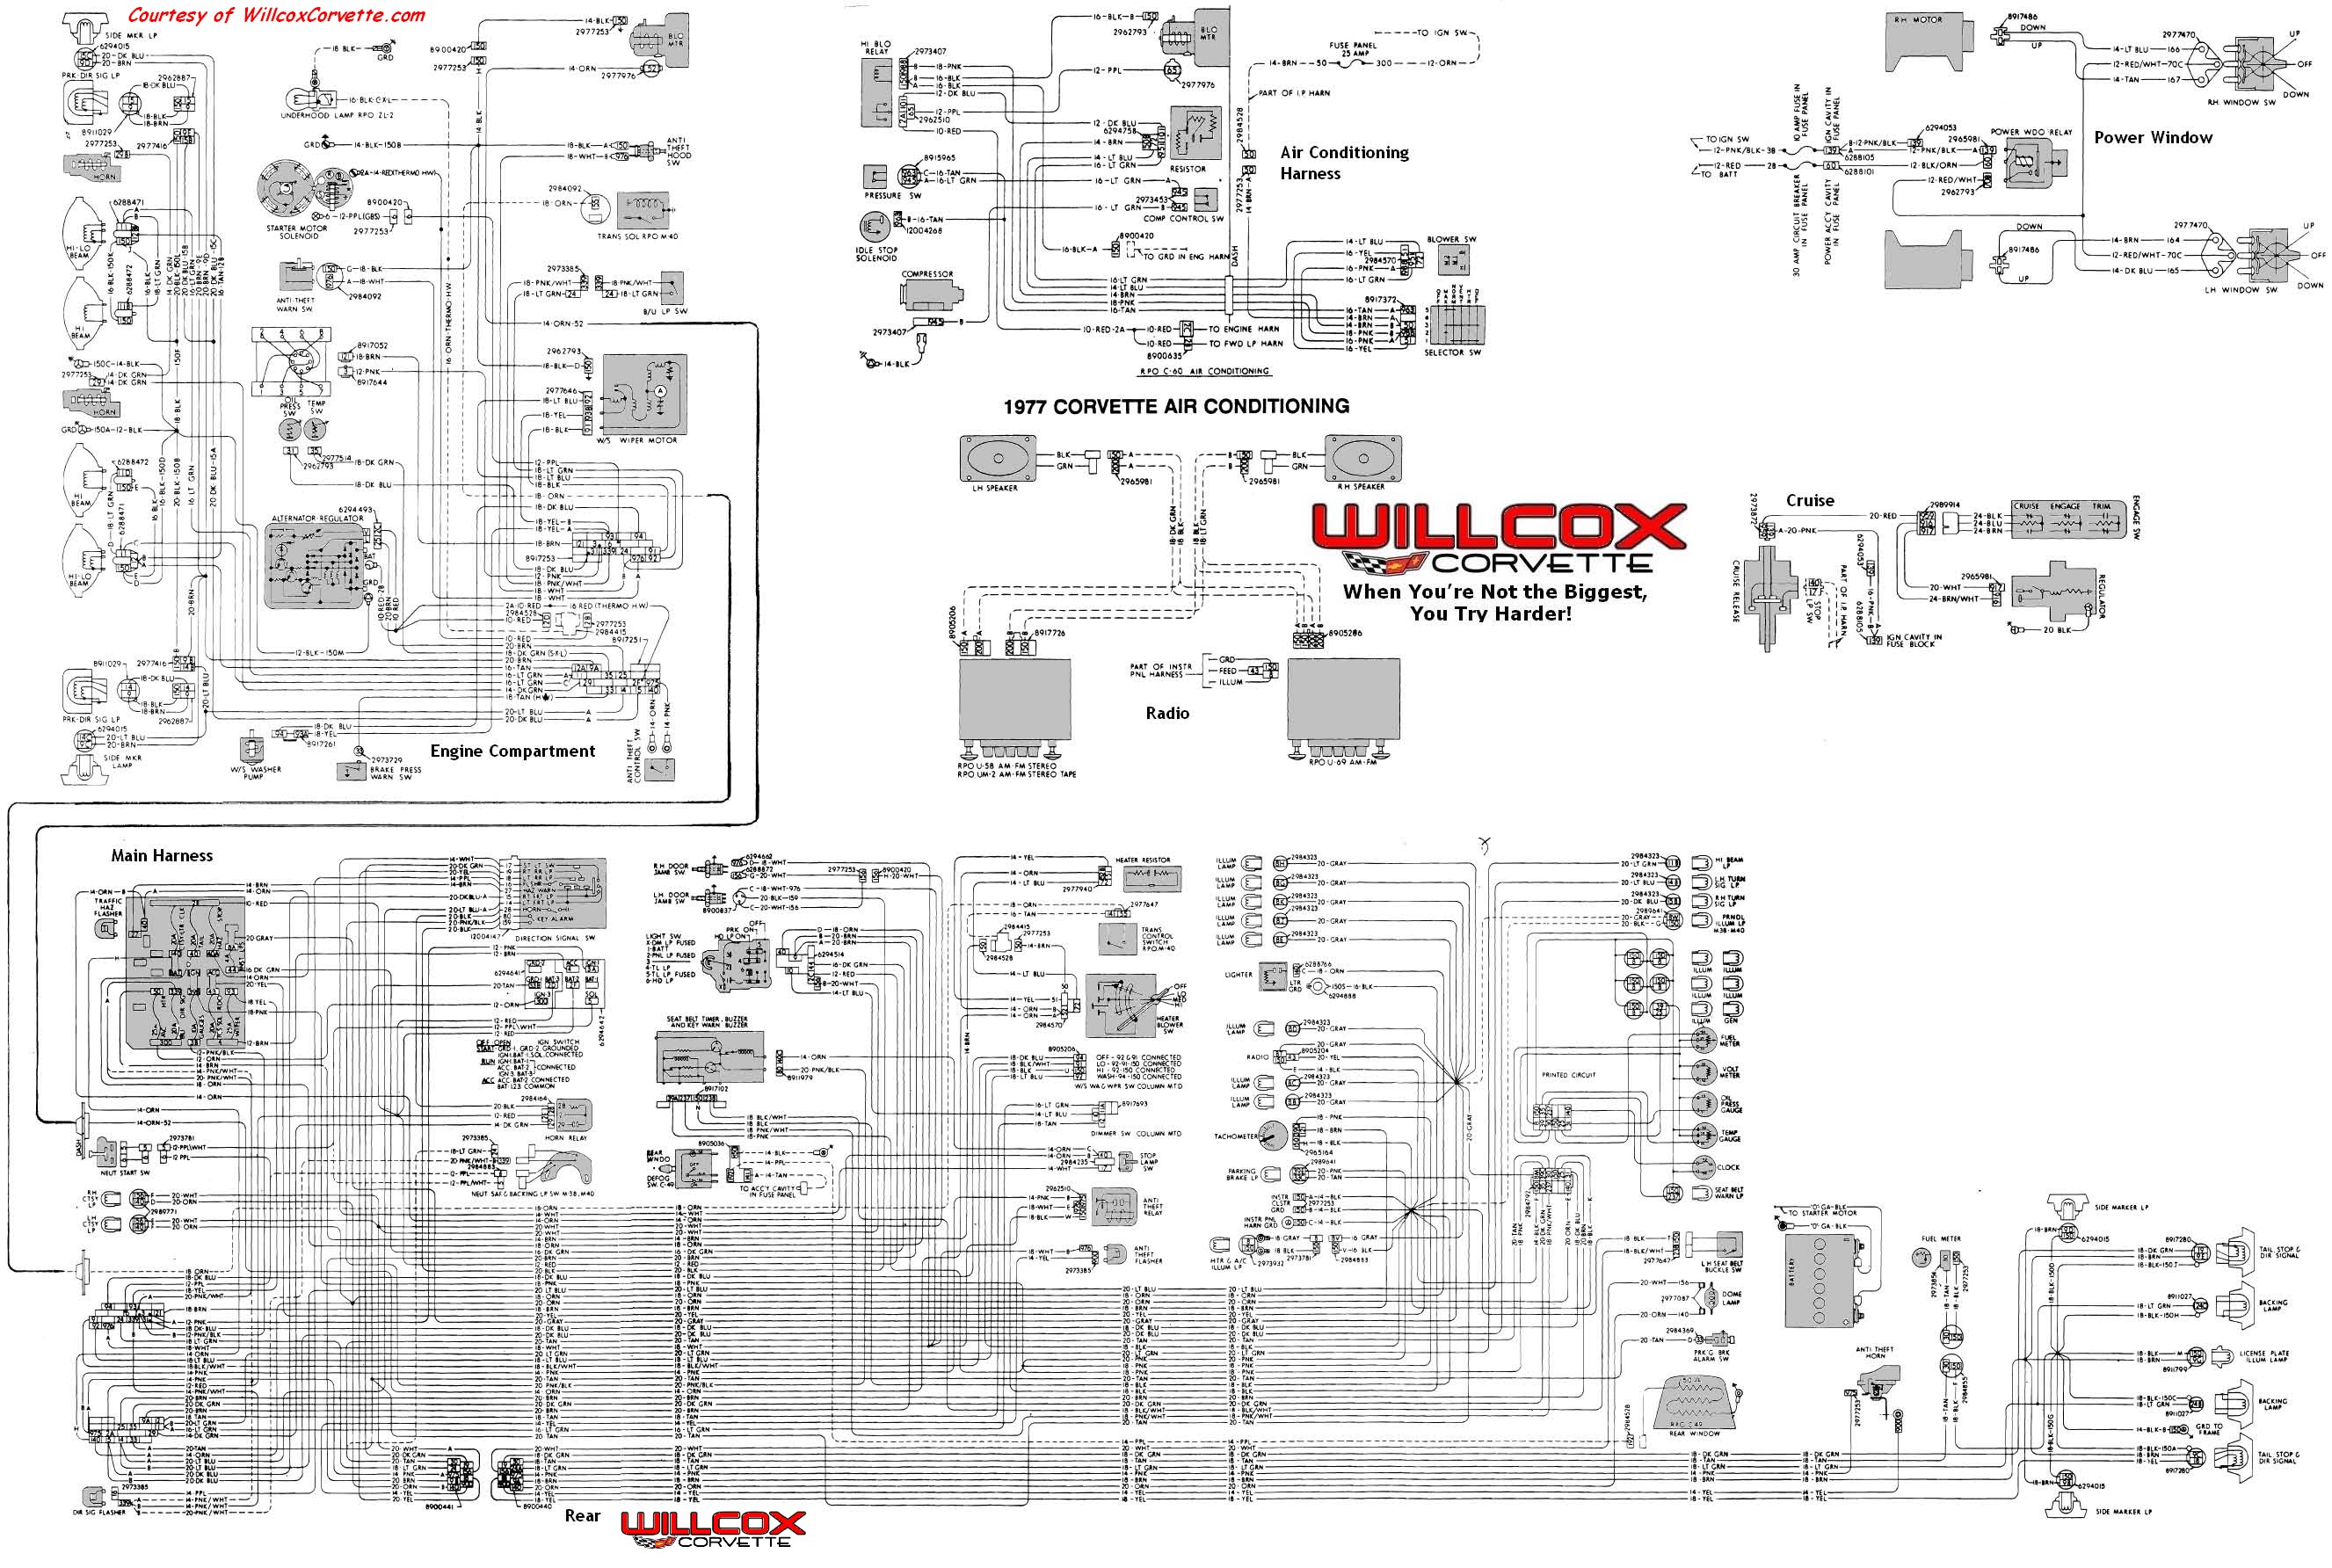 Engine Schematic Diagram 1977 Chevy Truck Wiring Diagram 1977 Circuit Diagrams Wiring Info • Of Engine Schematic Diagram